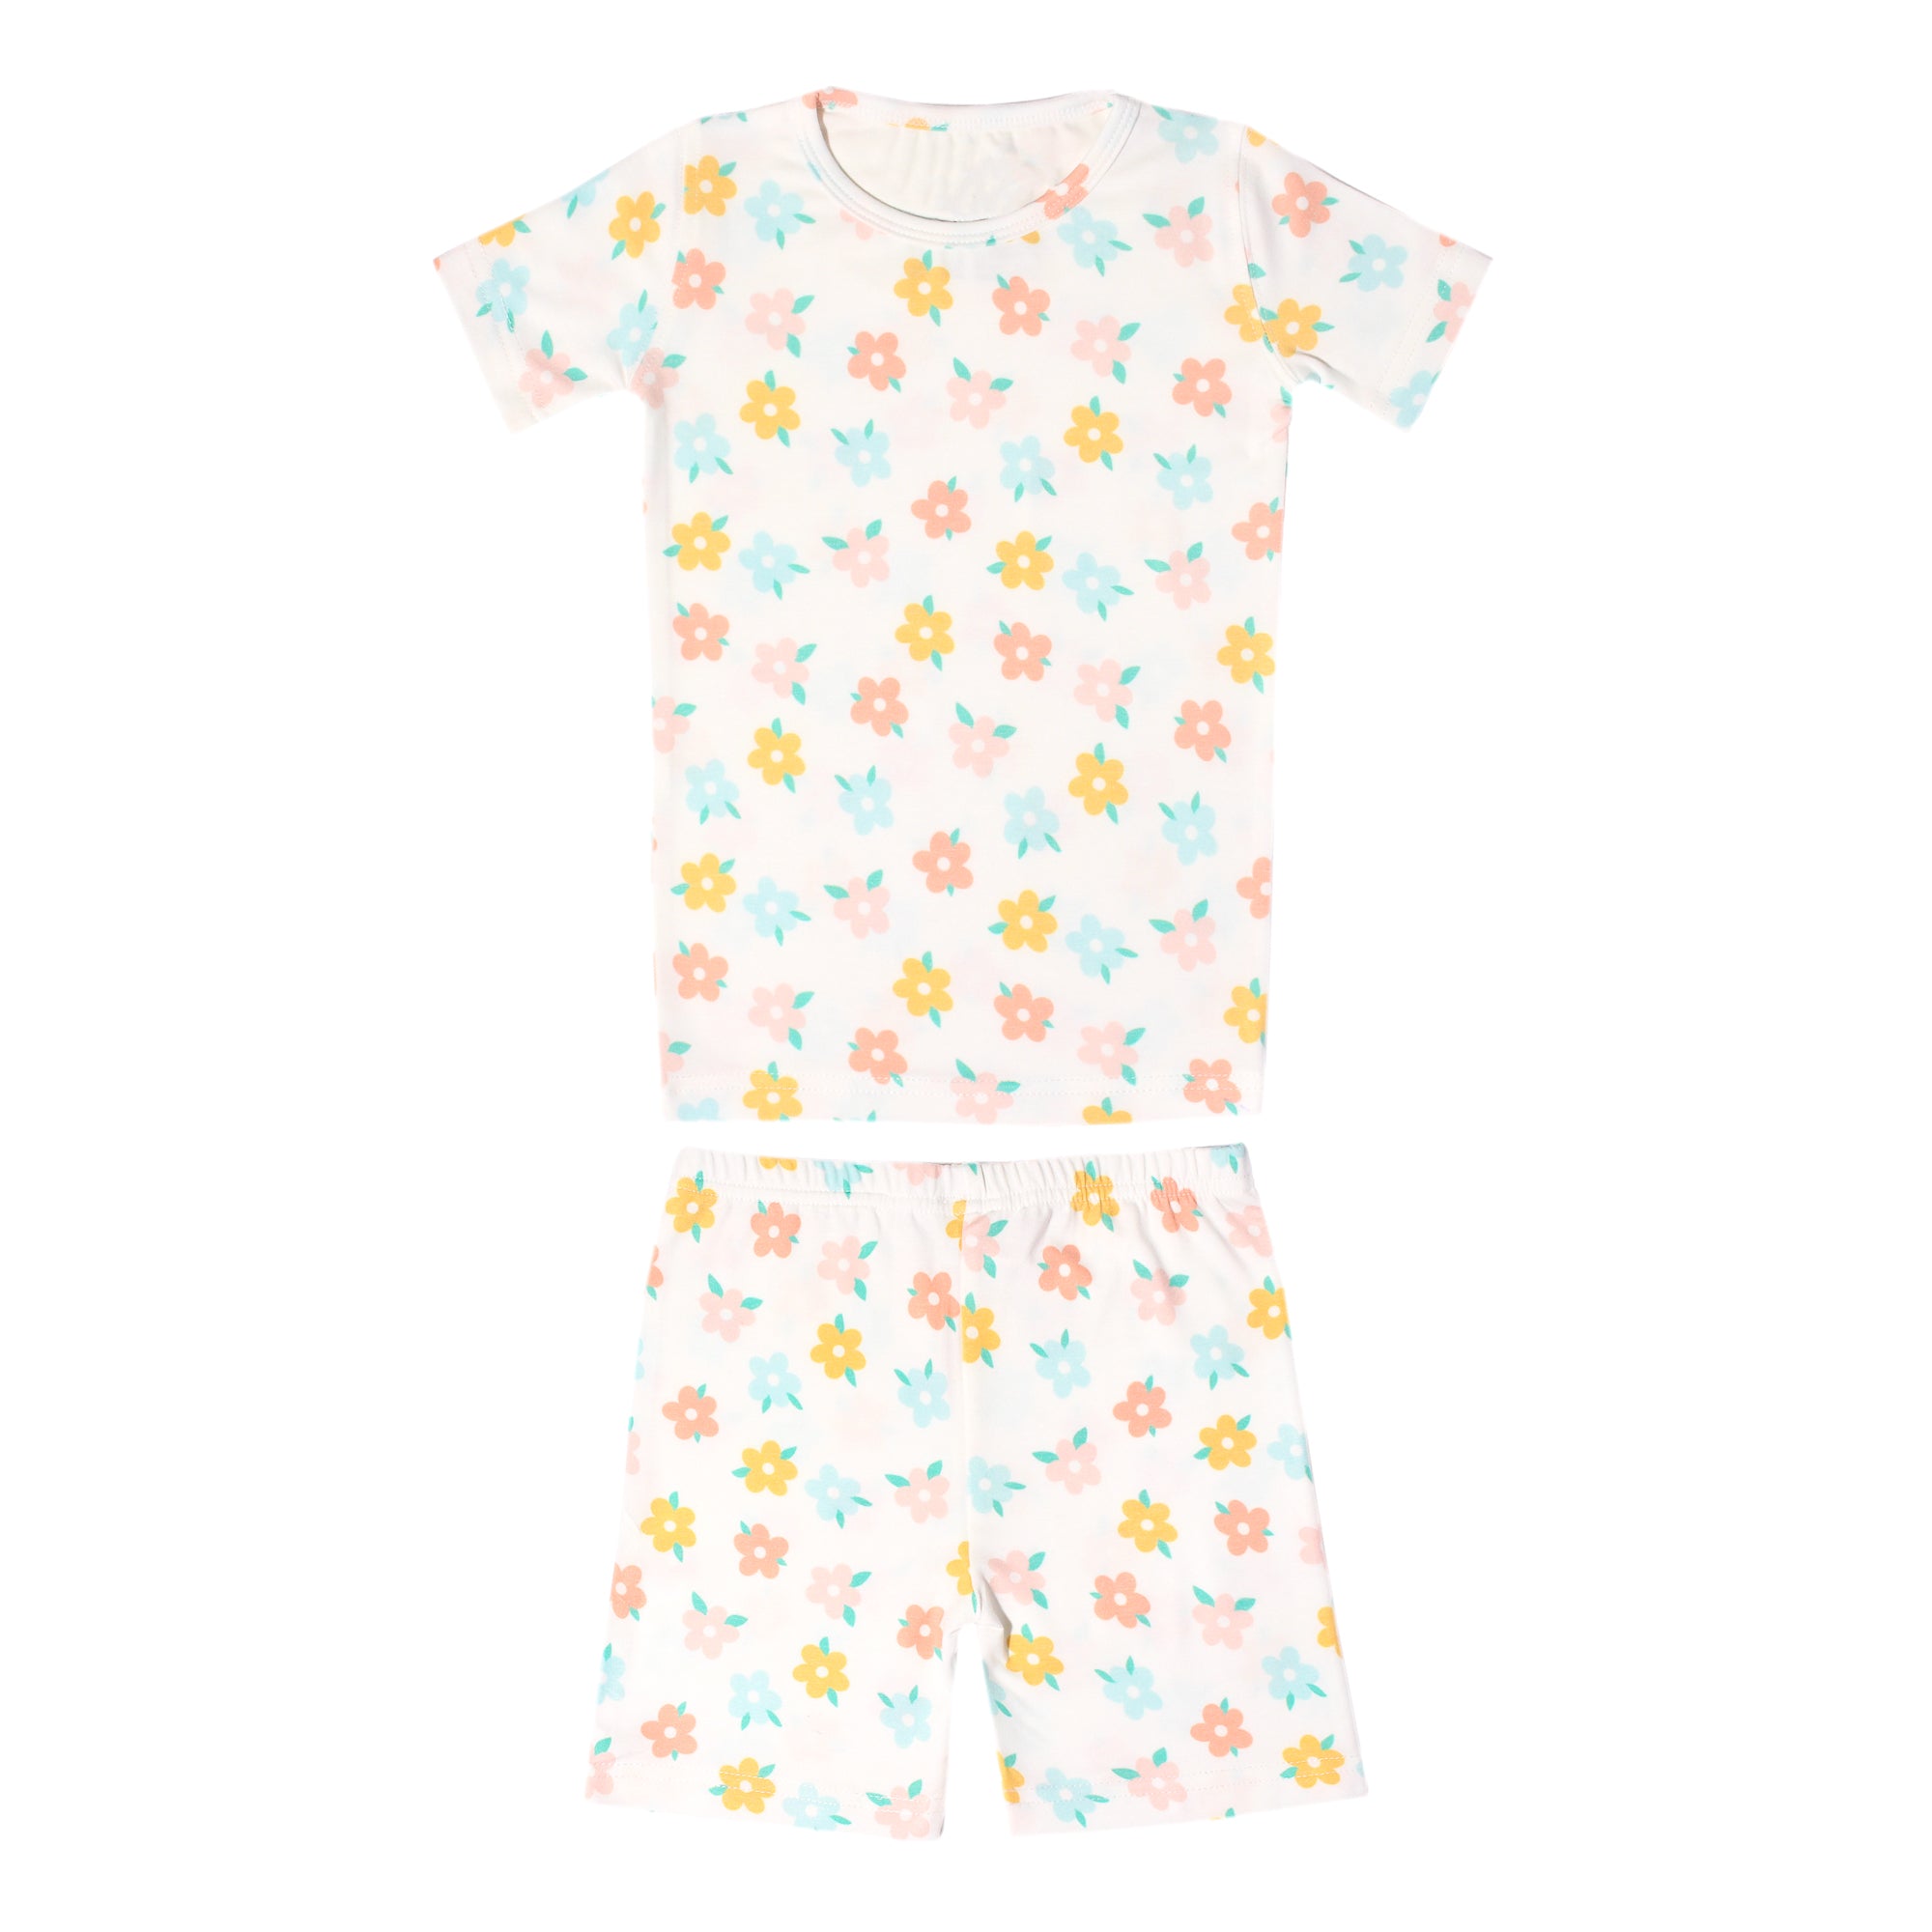 2pc Short Sleeve Pajama Set - Daisy